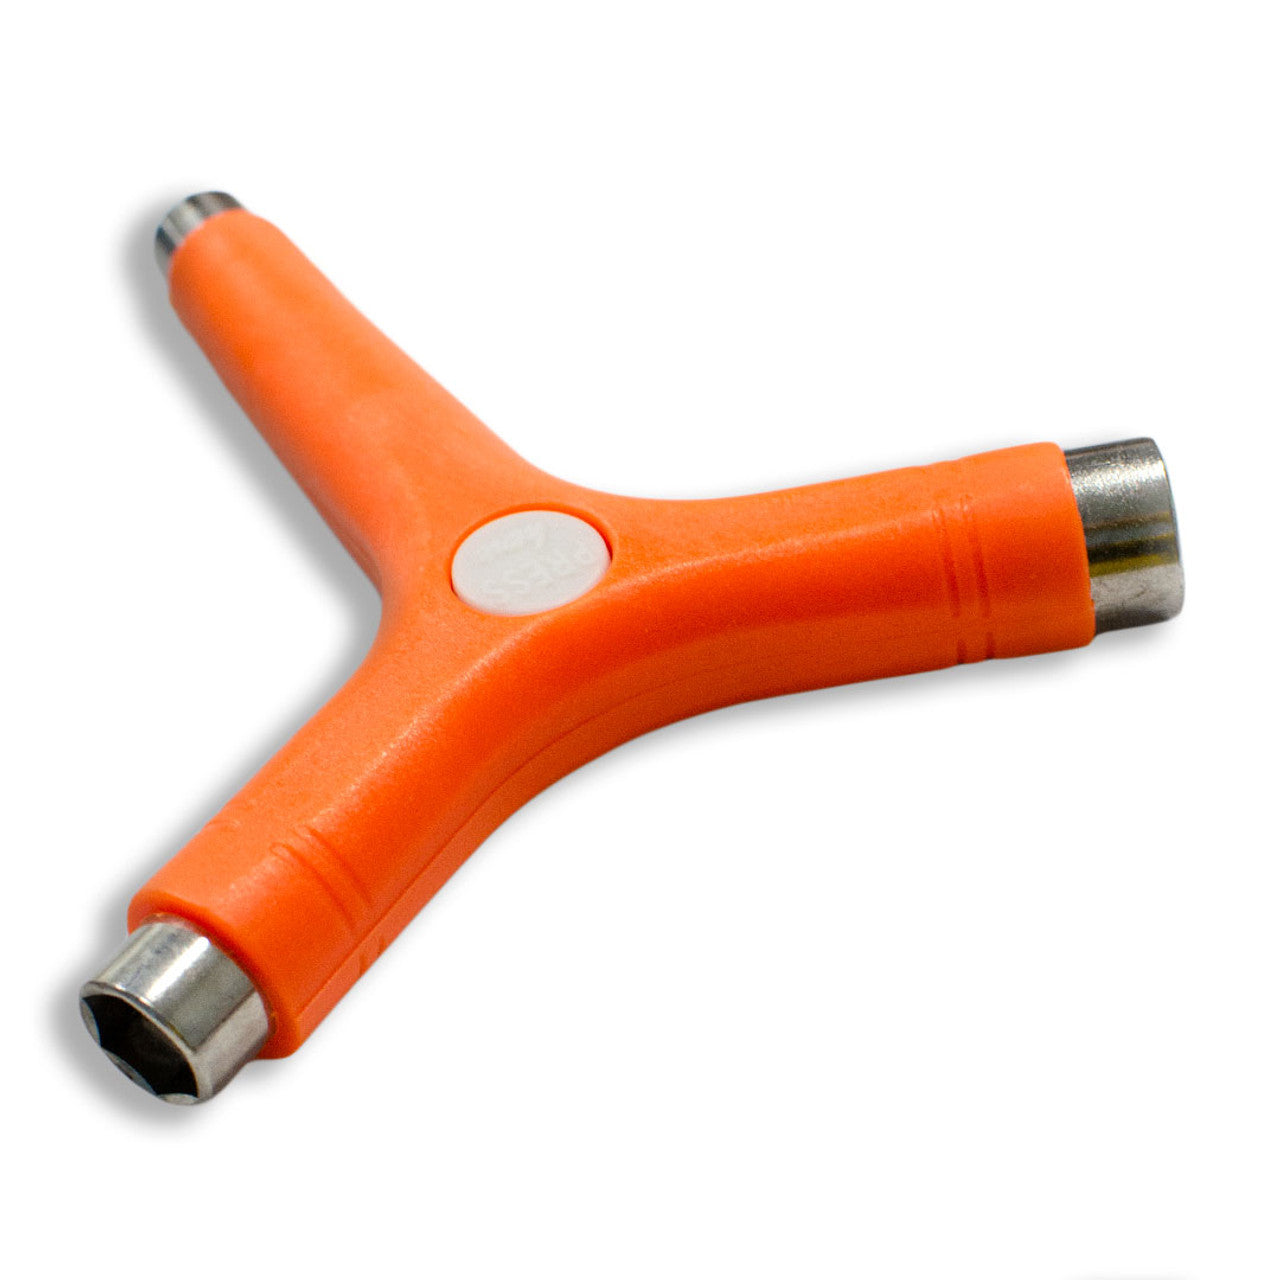 Y-Shaped Skate Tool - Orange